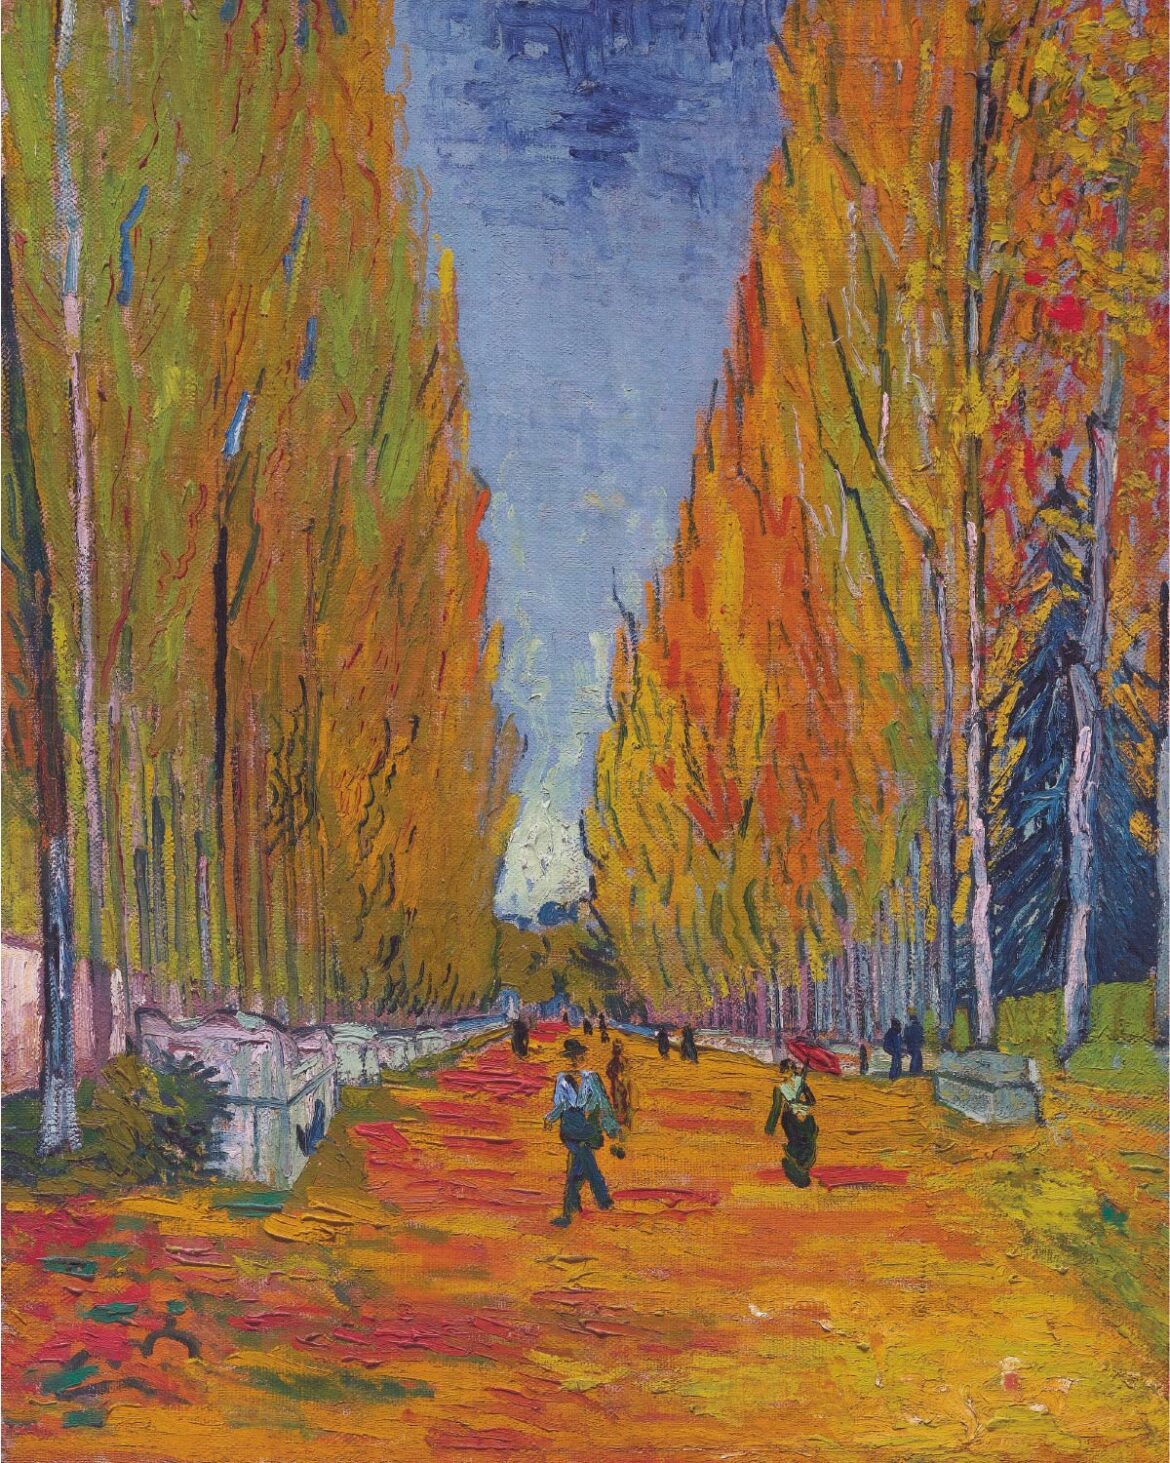 【無料壁紙】フィンセント・ファン・ゴッホ「アリスカンの並木道 (1888)」 / Vincent van Gogh_Les Alyscamps (1888)